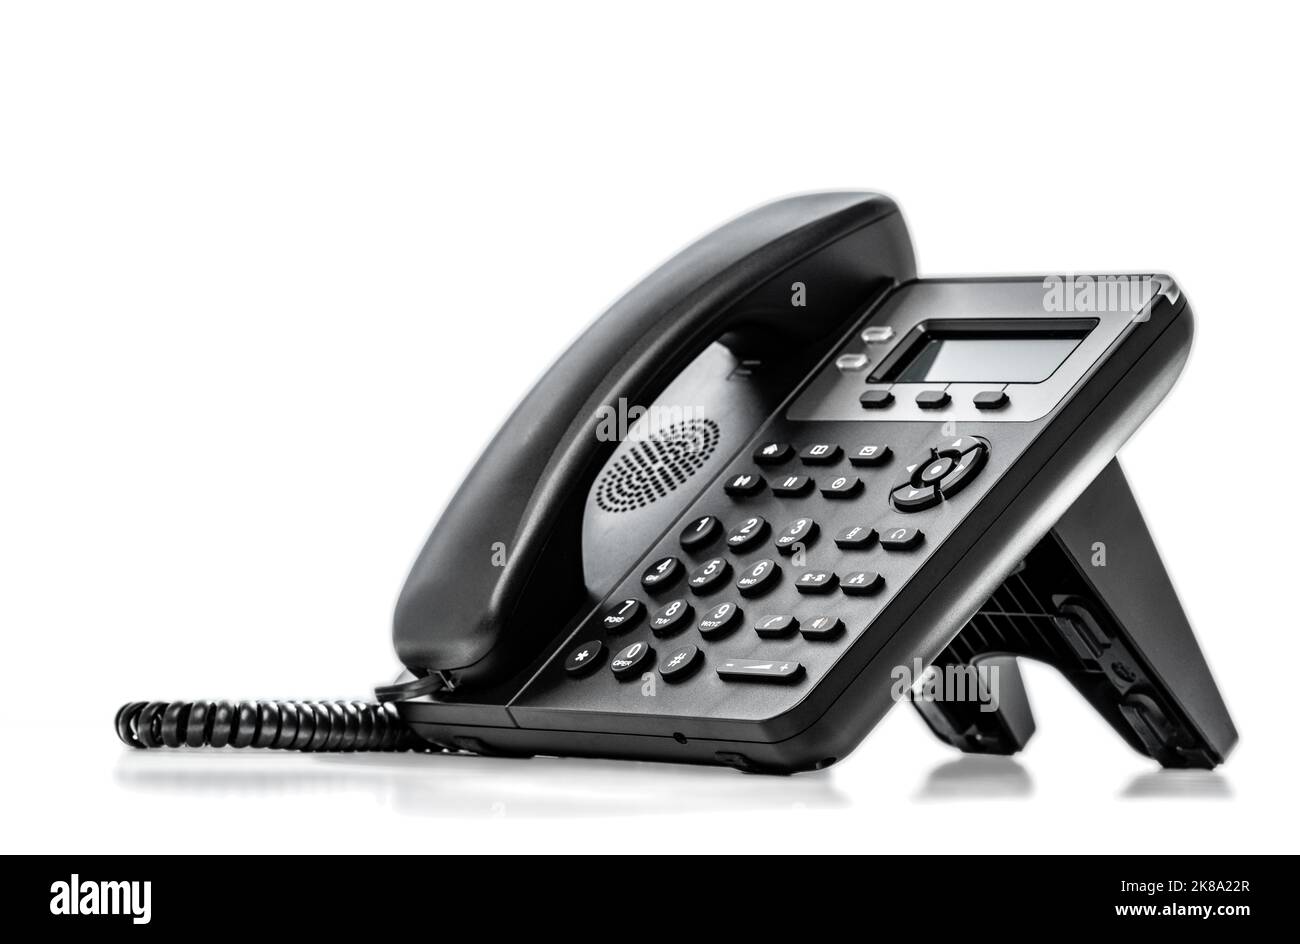 Sử dụng hệ thống điện thoại VoIP để truyền tin nhắn và gọi điện thoại tiết kiệm chi phí hơn và thuận tiện hơn. Cùng trải nghiệm tính năng nâng cao, hỗ trợ chat trực tuyến, gởi file trực tiếp và nhiều tính năng hữu ích khác nữa. Đừng bỏ lỡ cơ hội trải nghiệm tiện ích này trong cuộc sống hàng ngày của bạn!